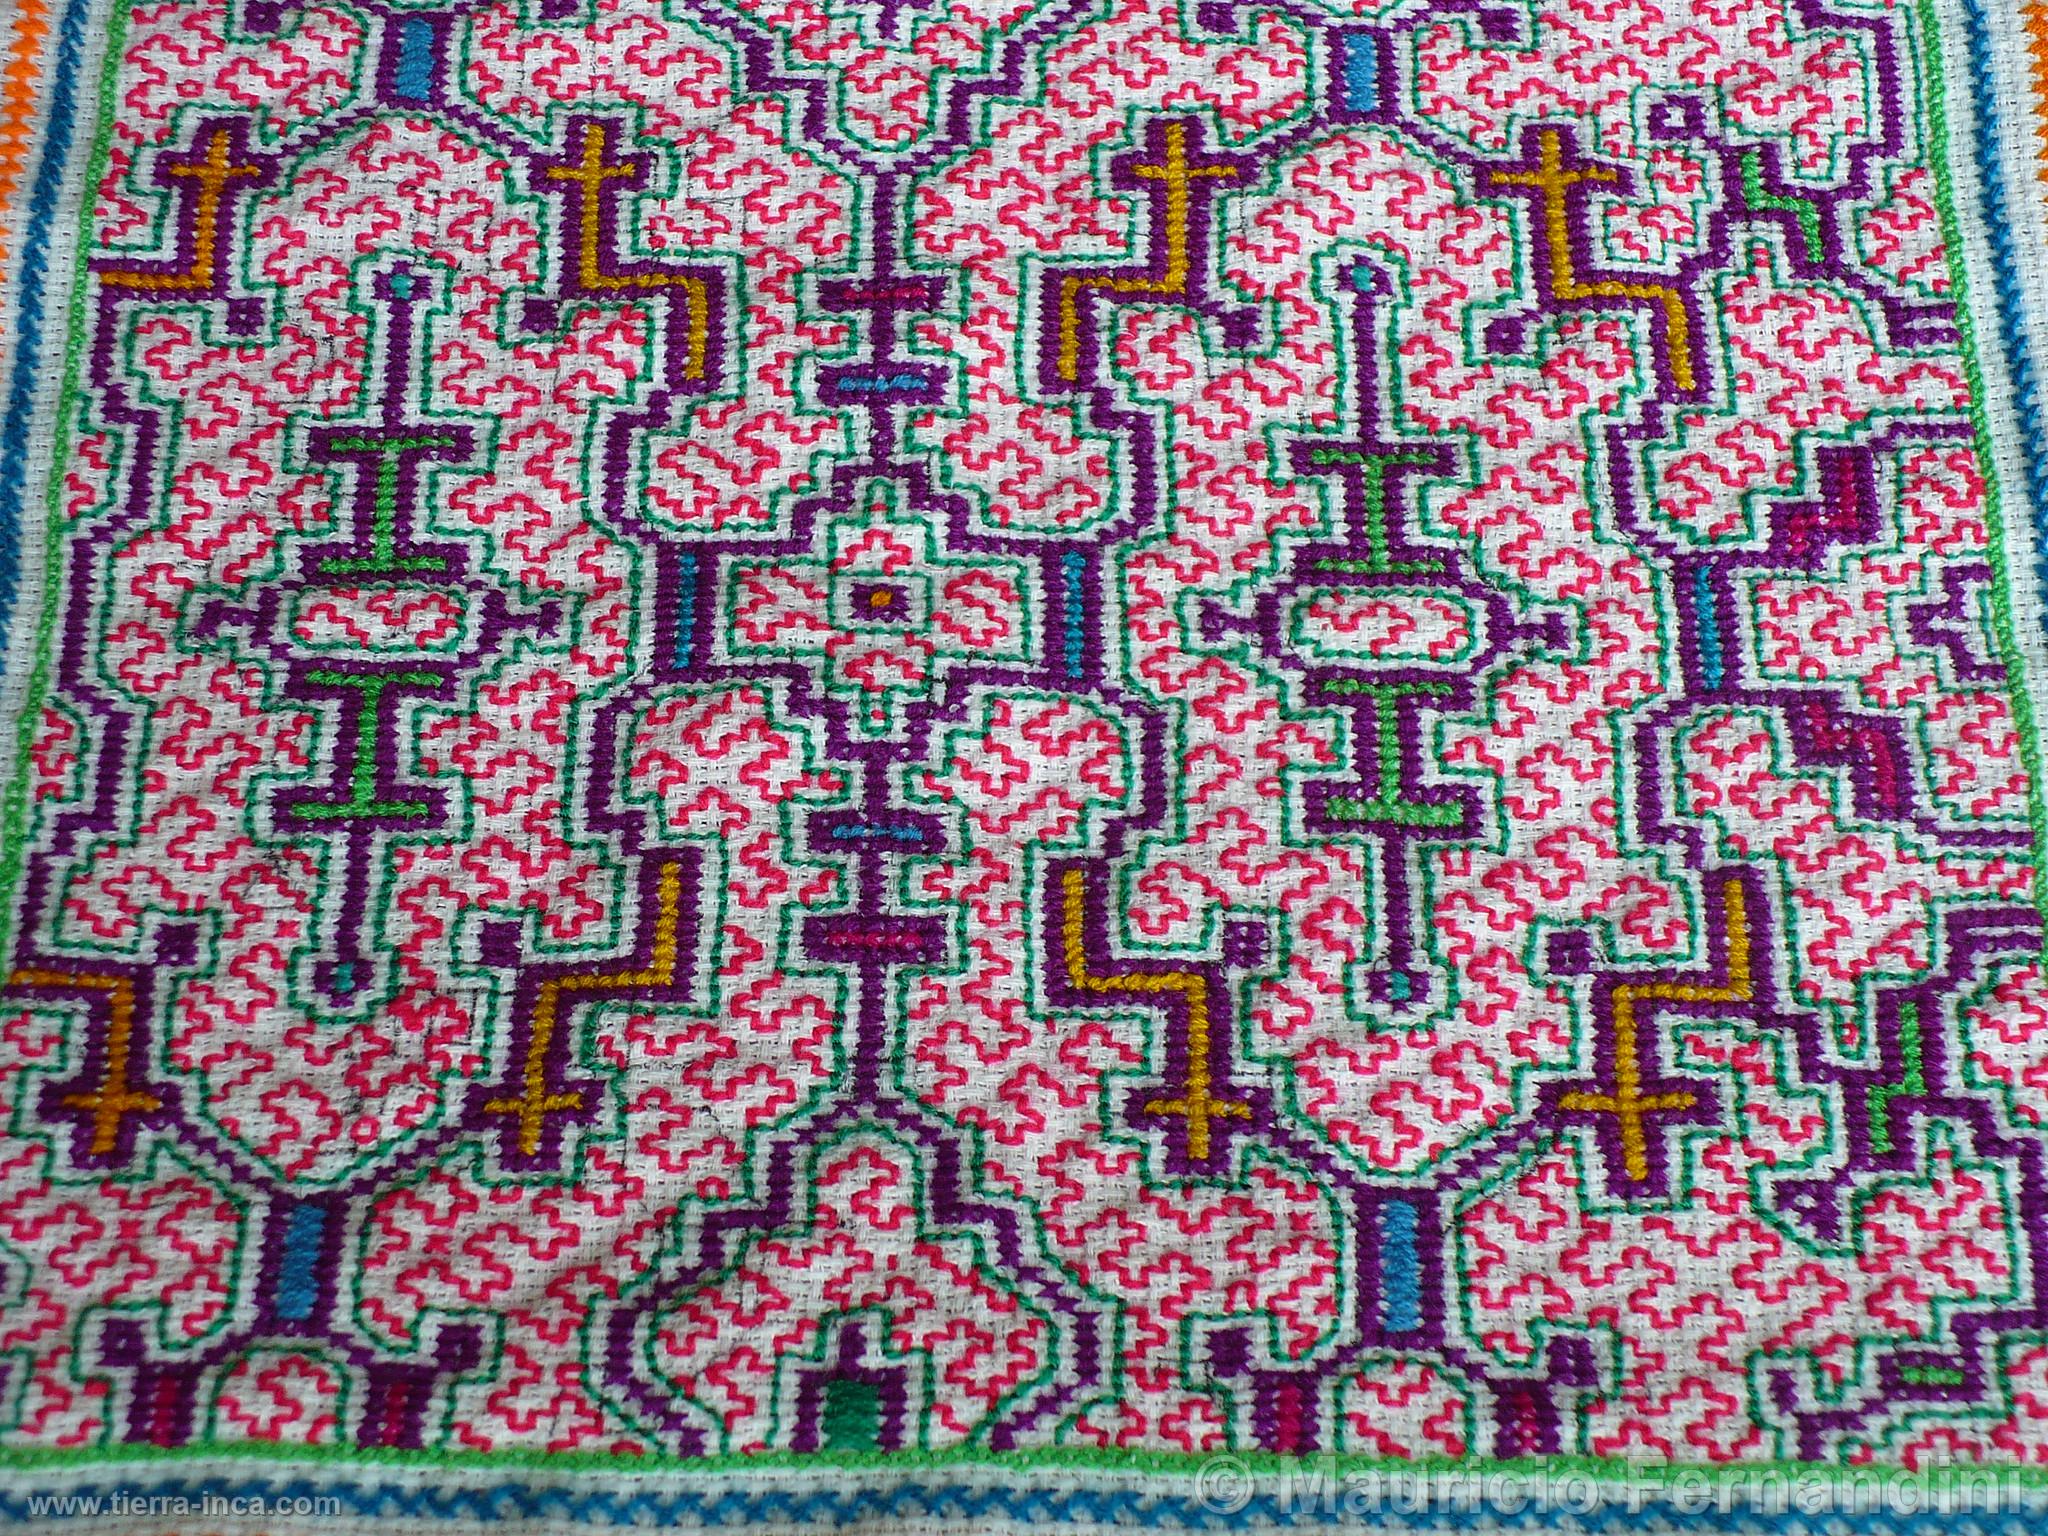 Textil artesanal de Ucayali